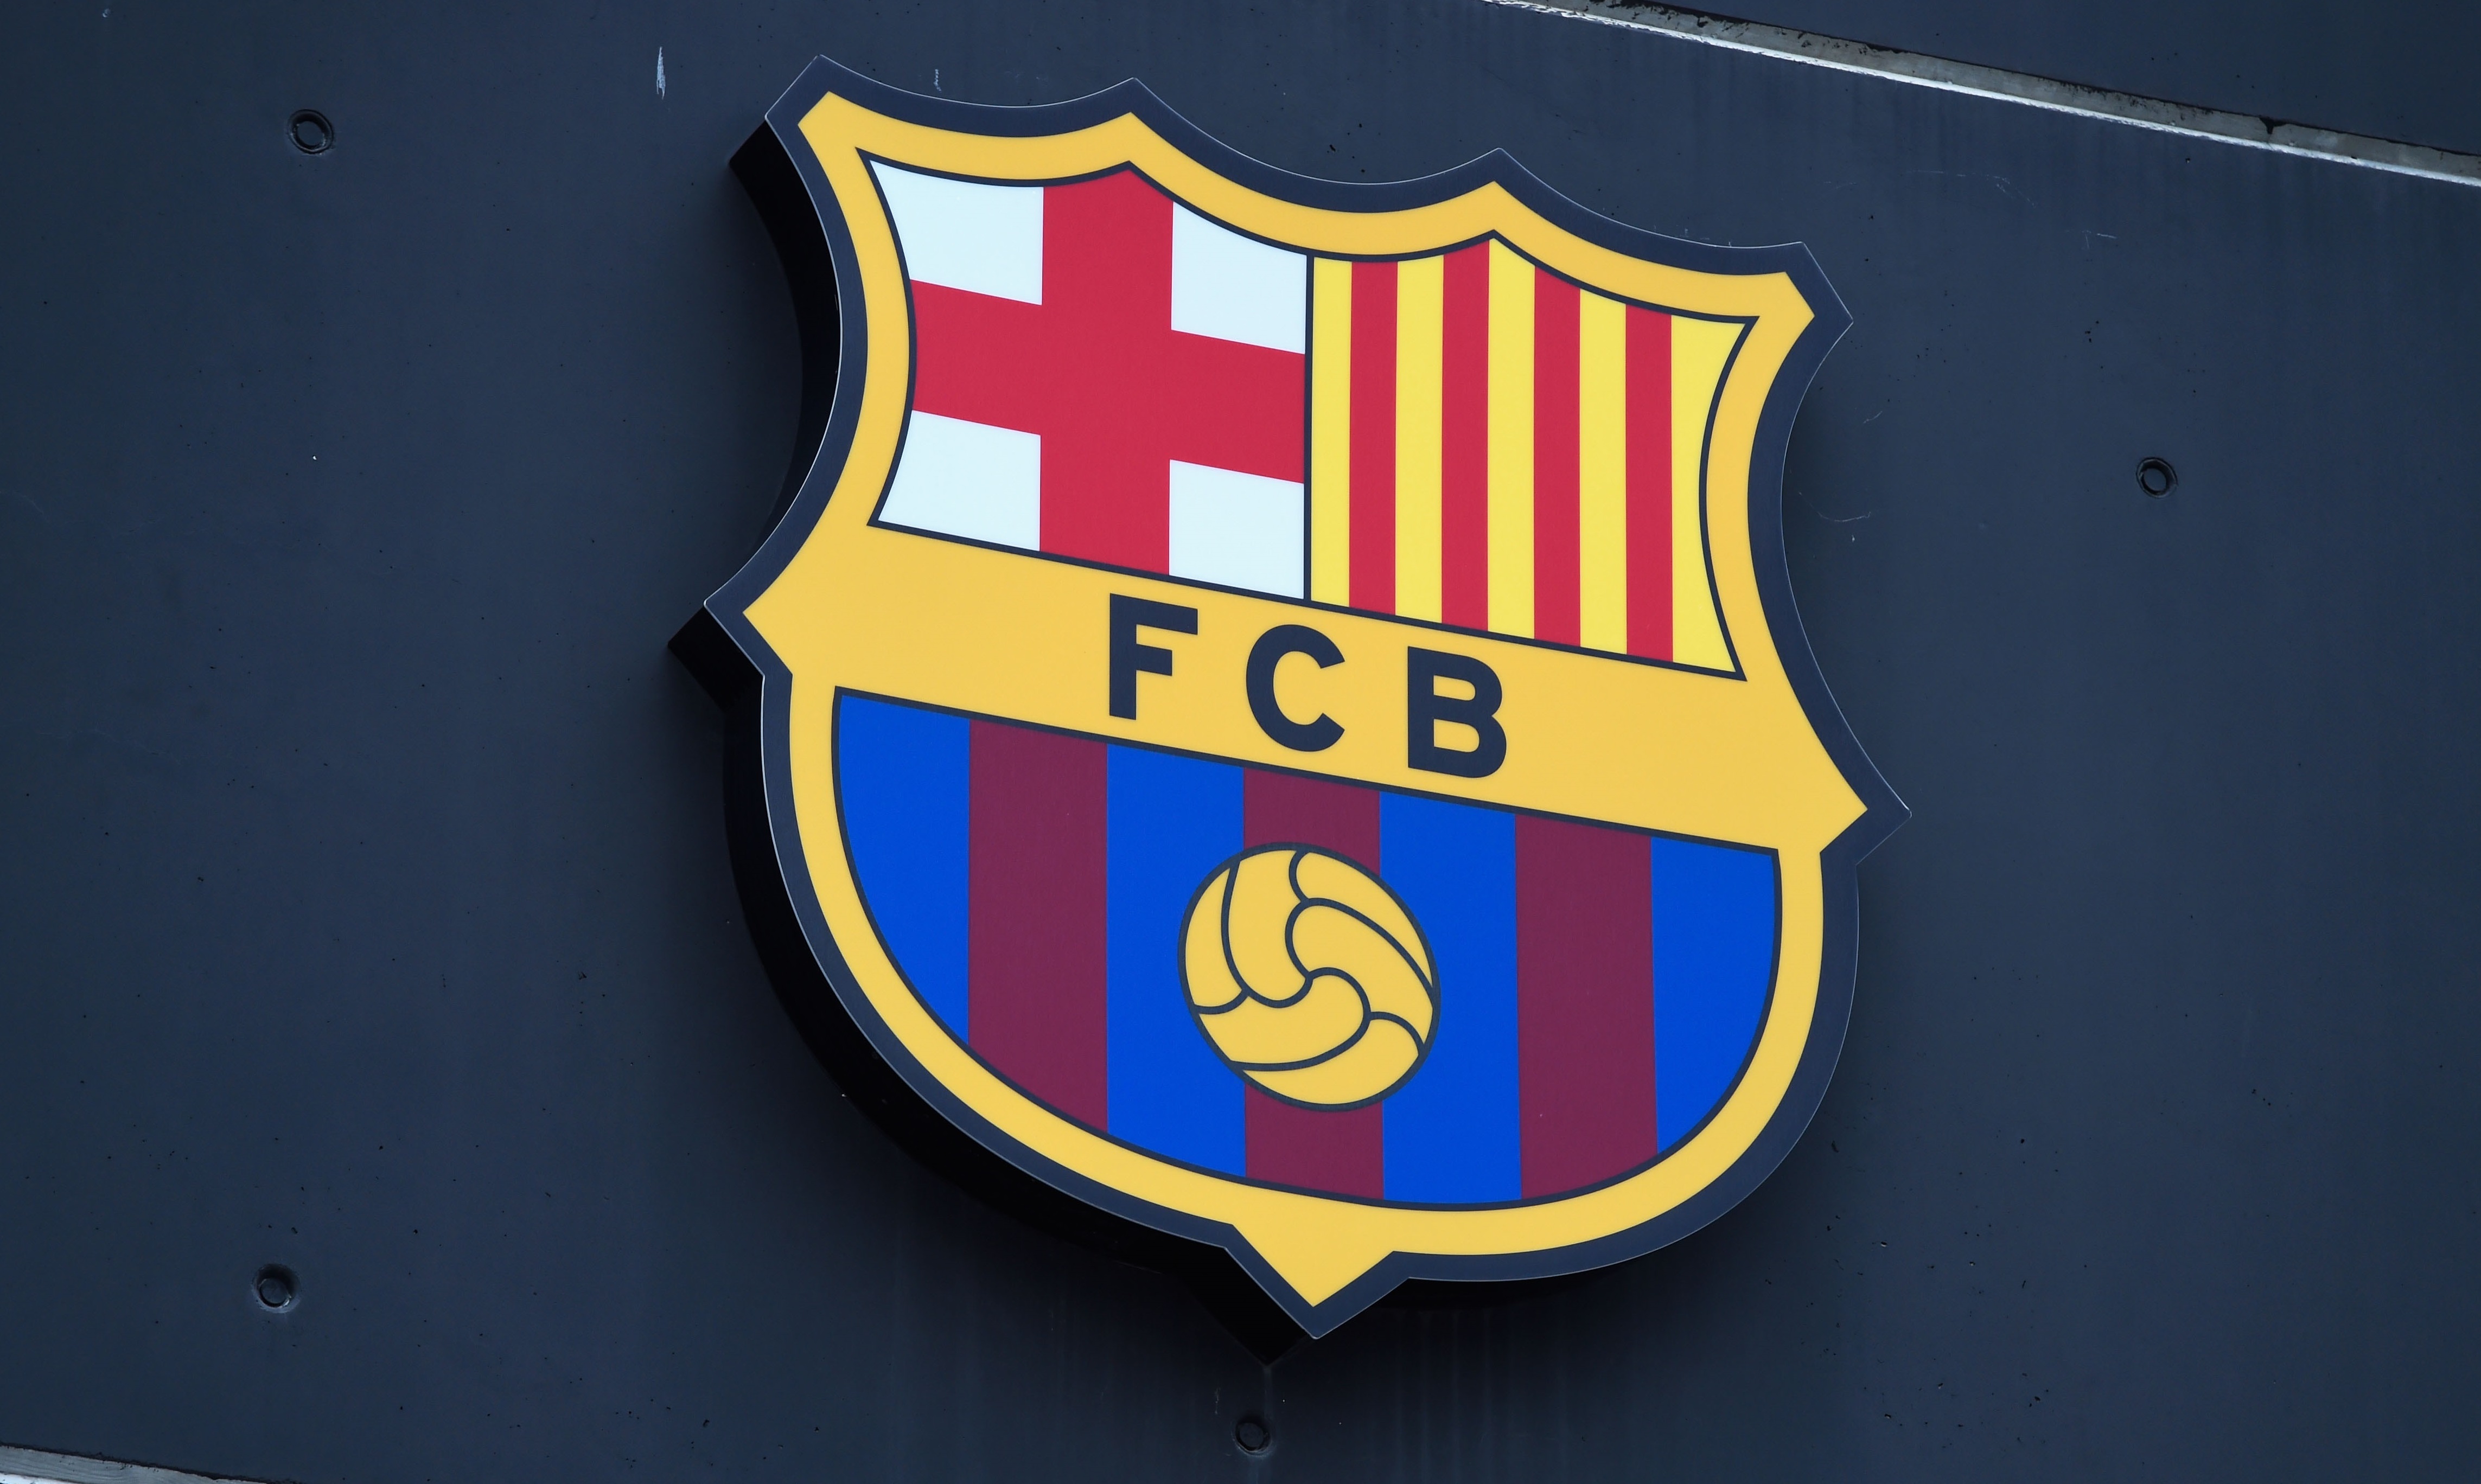 Trădare în Spania? Fotbalistul pleacă de la Barcelona și semnează cu Atletico Madrid